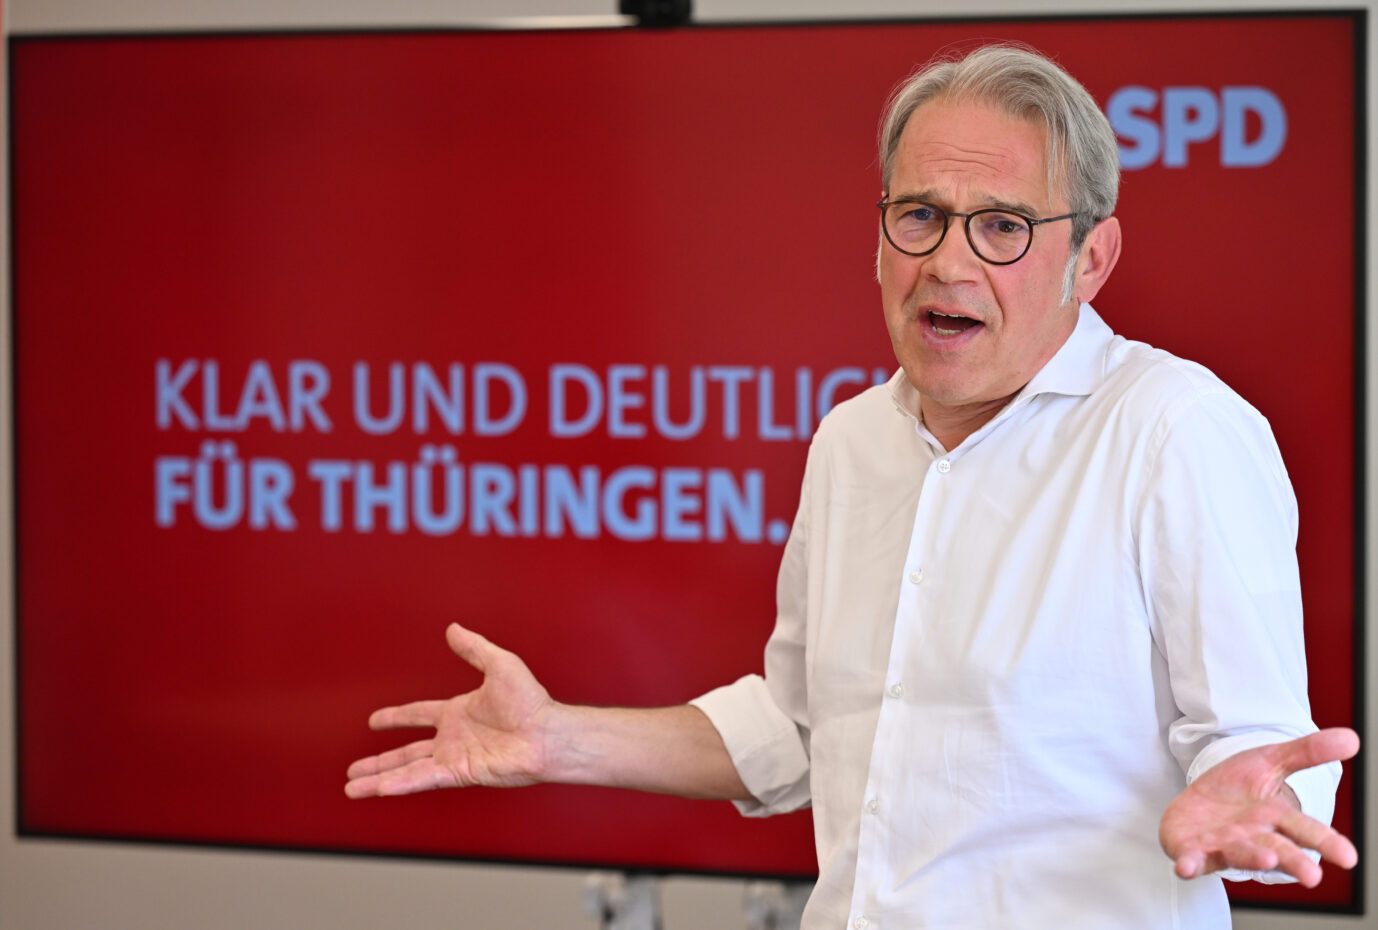 SPD-Spitzenkandidat für Thüringen, Georg Maier, ist ratlos angesichts der von ihm vermuteten Unterstützung der Wirtschaft für die AfD